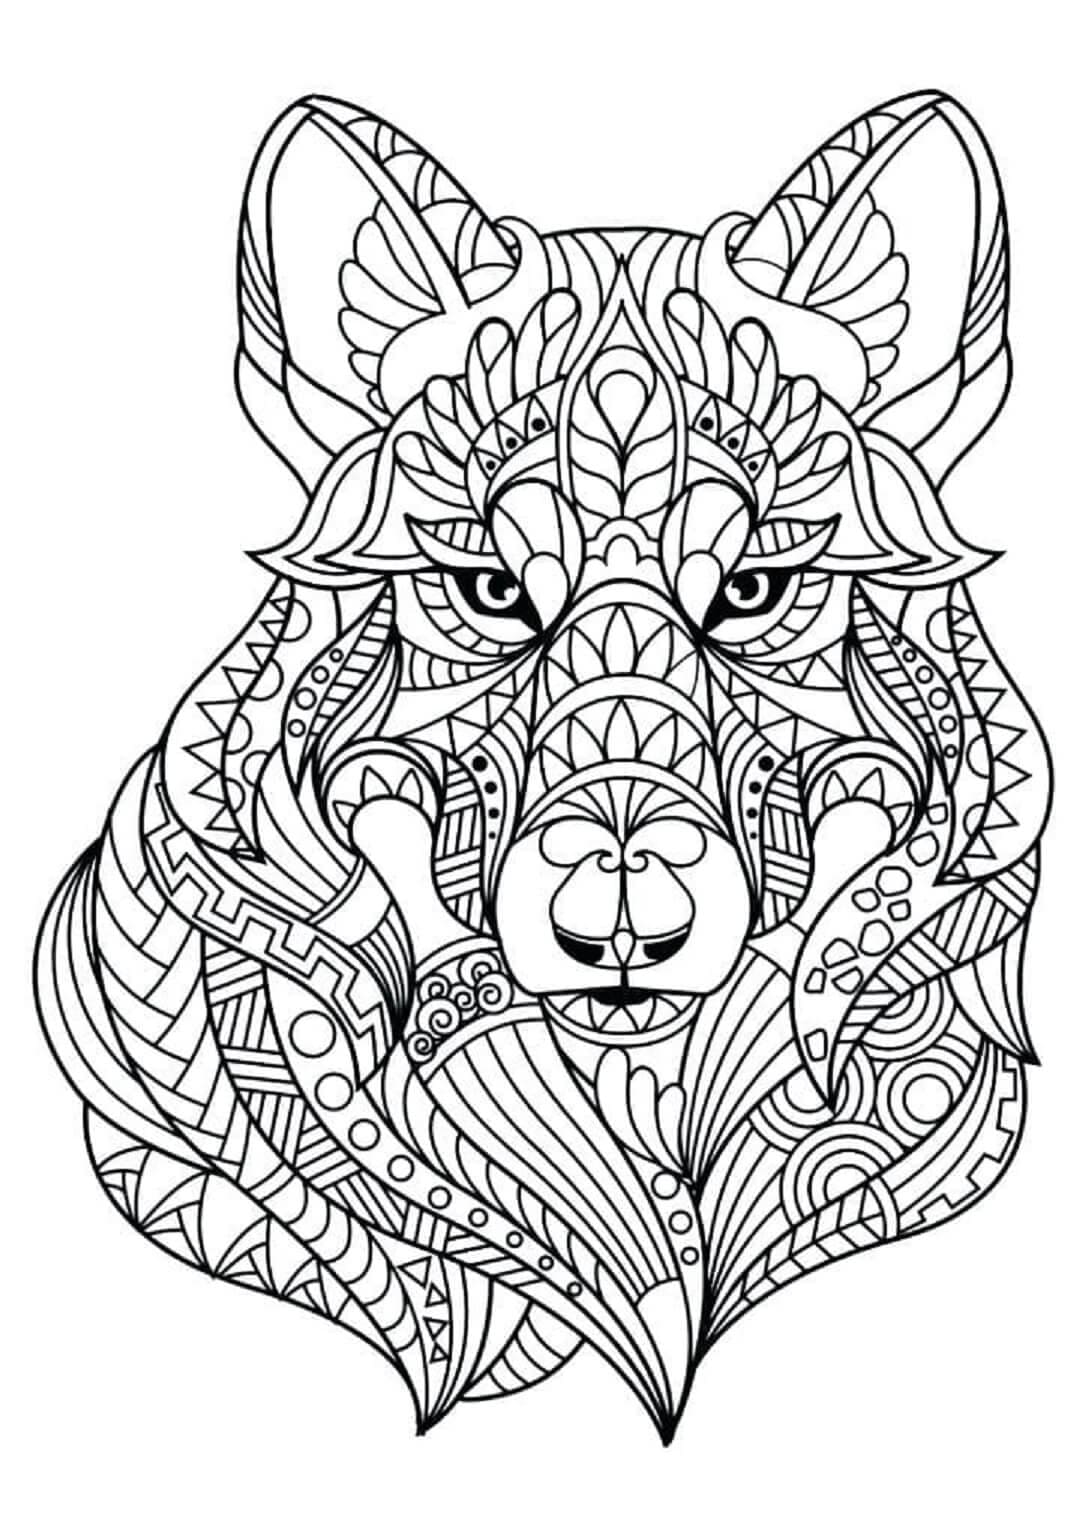 Mandala de Base du Loup coloring page